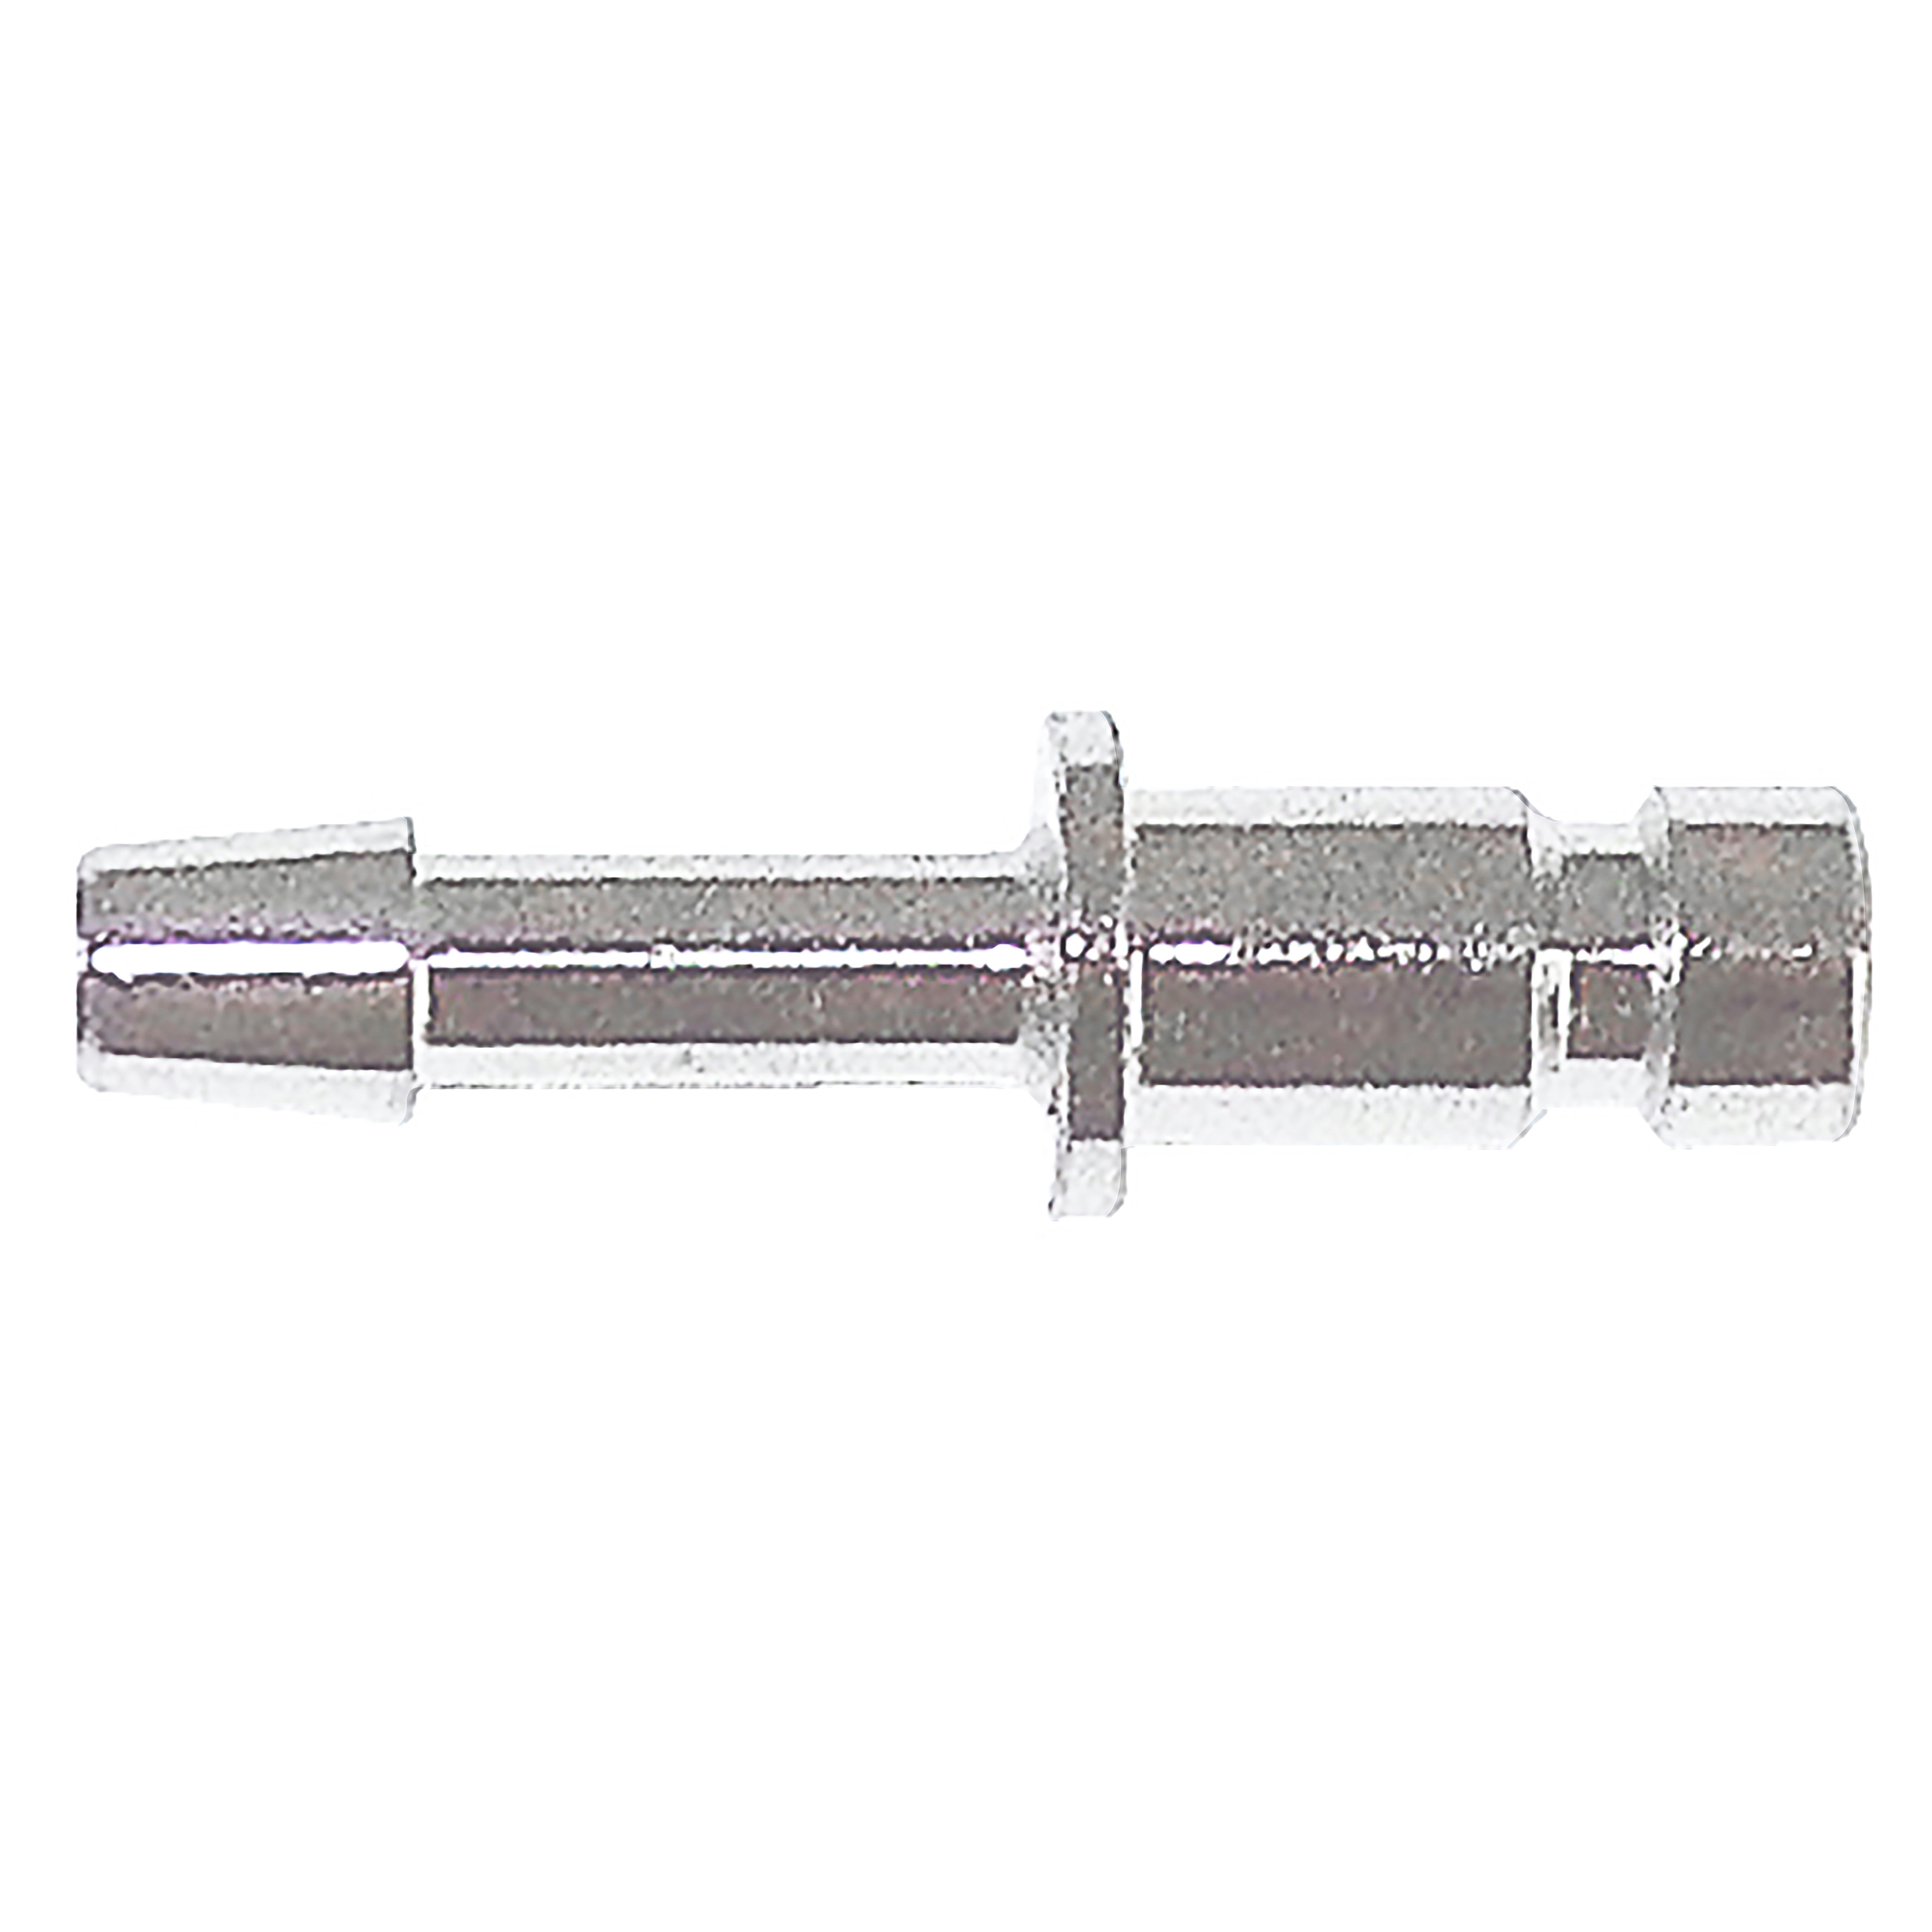 DN 2.7 micro-plug, hose nozzle